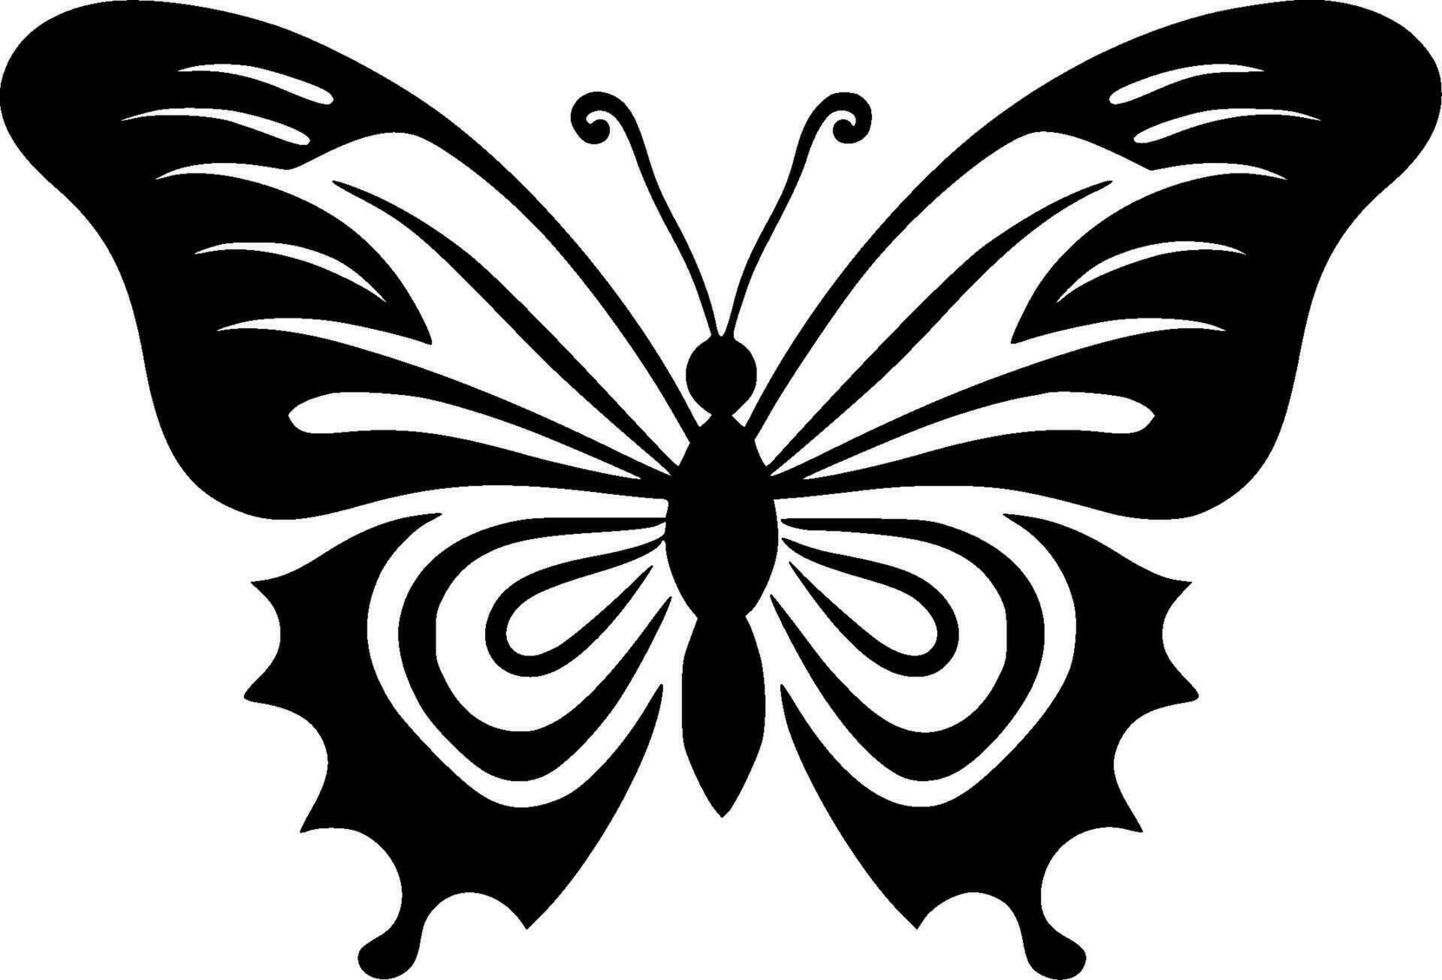 farfalla - minimalista e piatto logo - vettore illustrazione